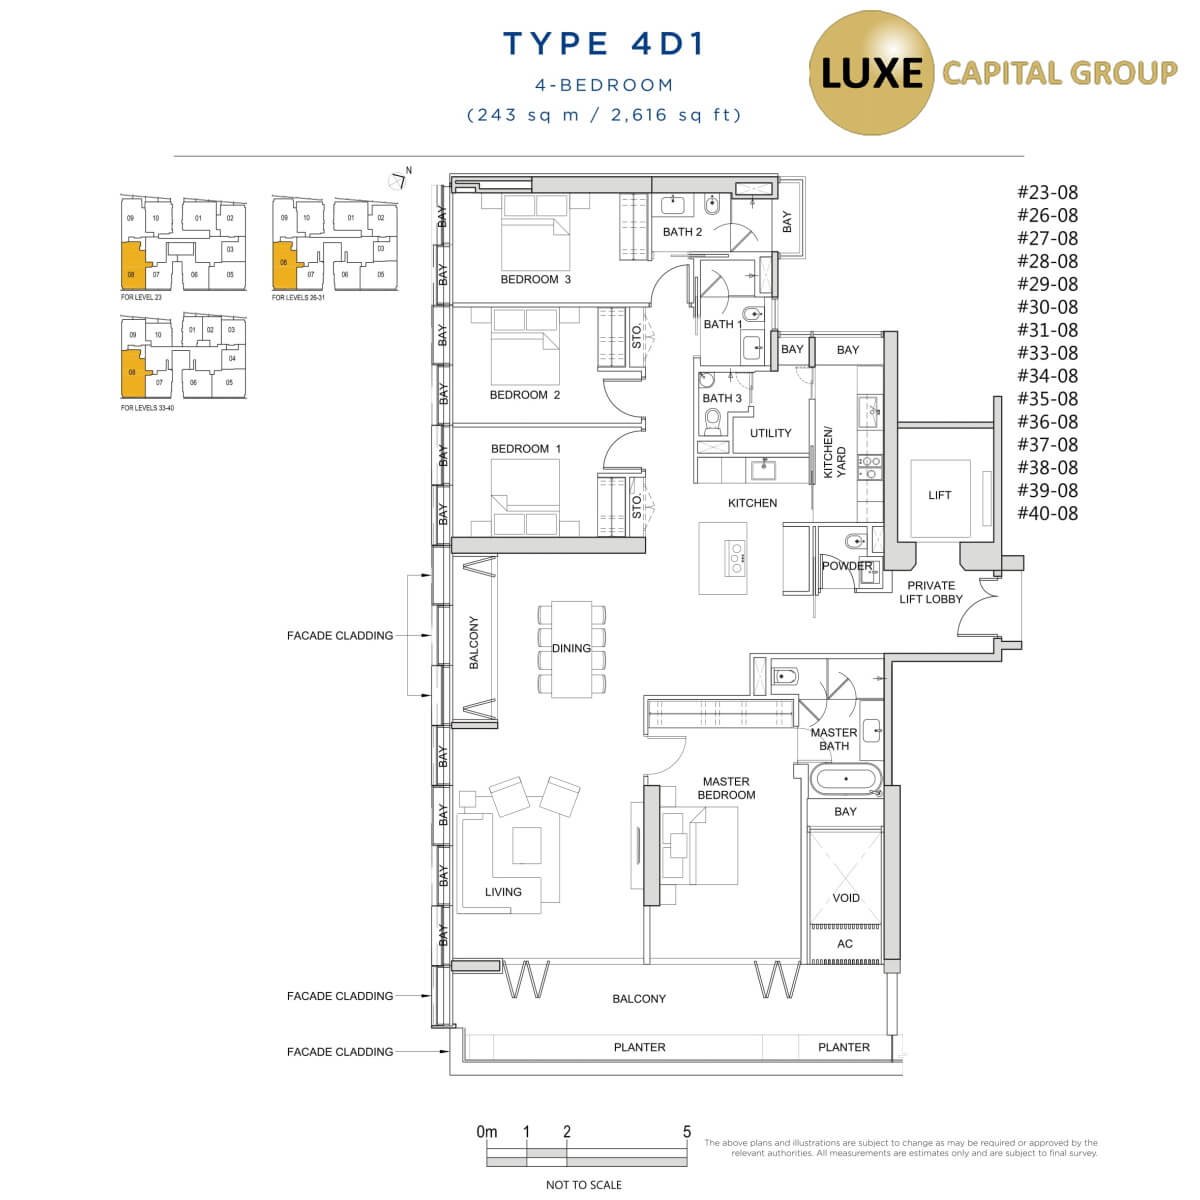 South Beach Residences Floorplan - Type 4D1 - 4 BR